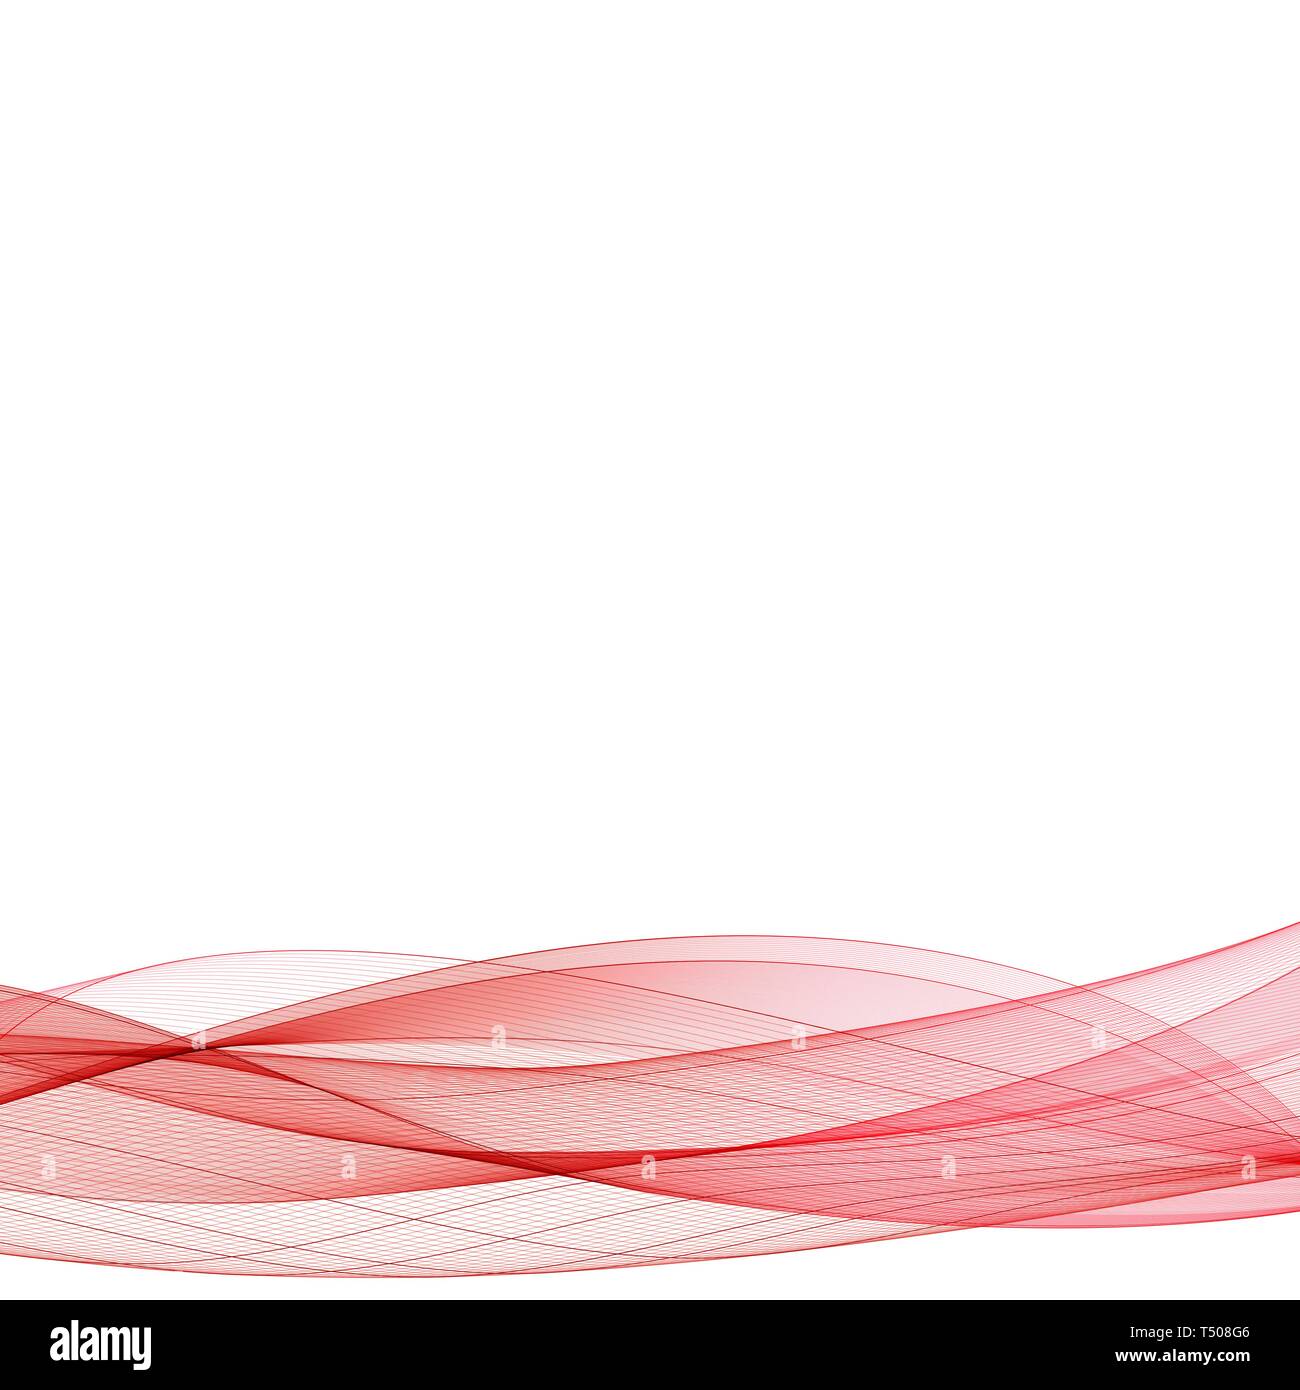 Abstrakt Rot Wave Design Element Vektor Hintergrund Mit Kurven Linien Fur Flyer Broschuren Und Websites Zu Entwerfen Stockfotografie Alamy